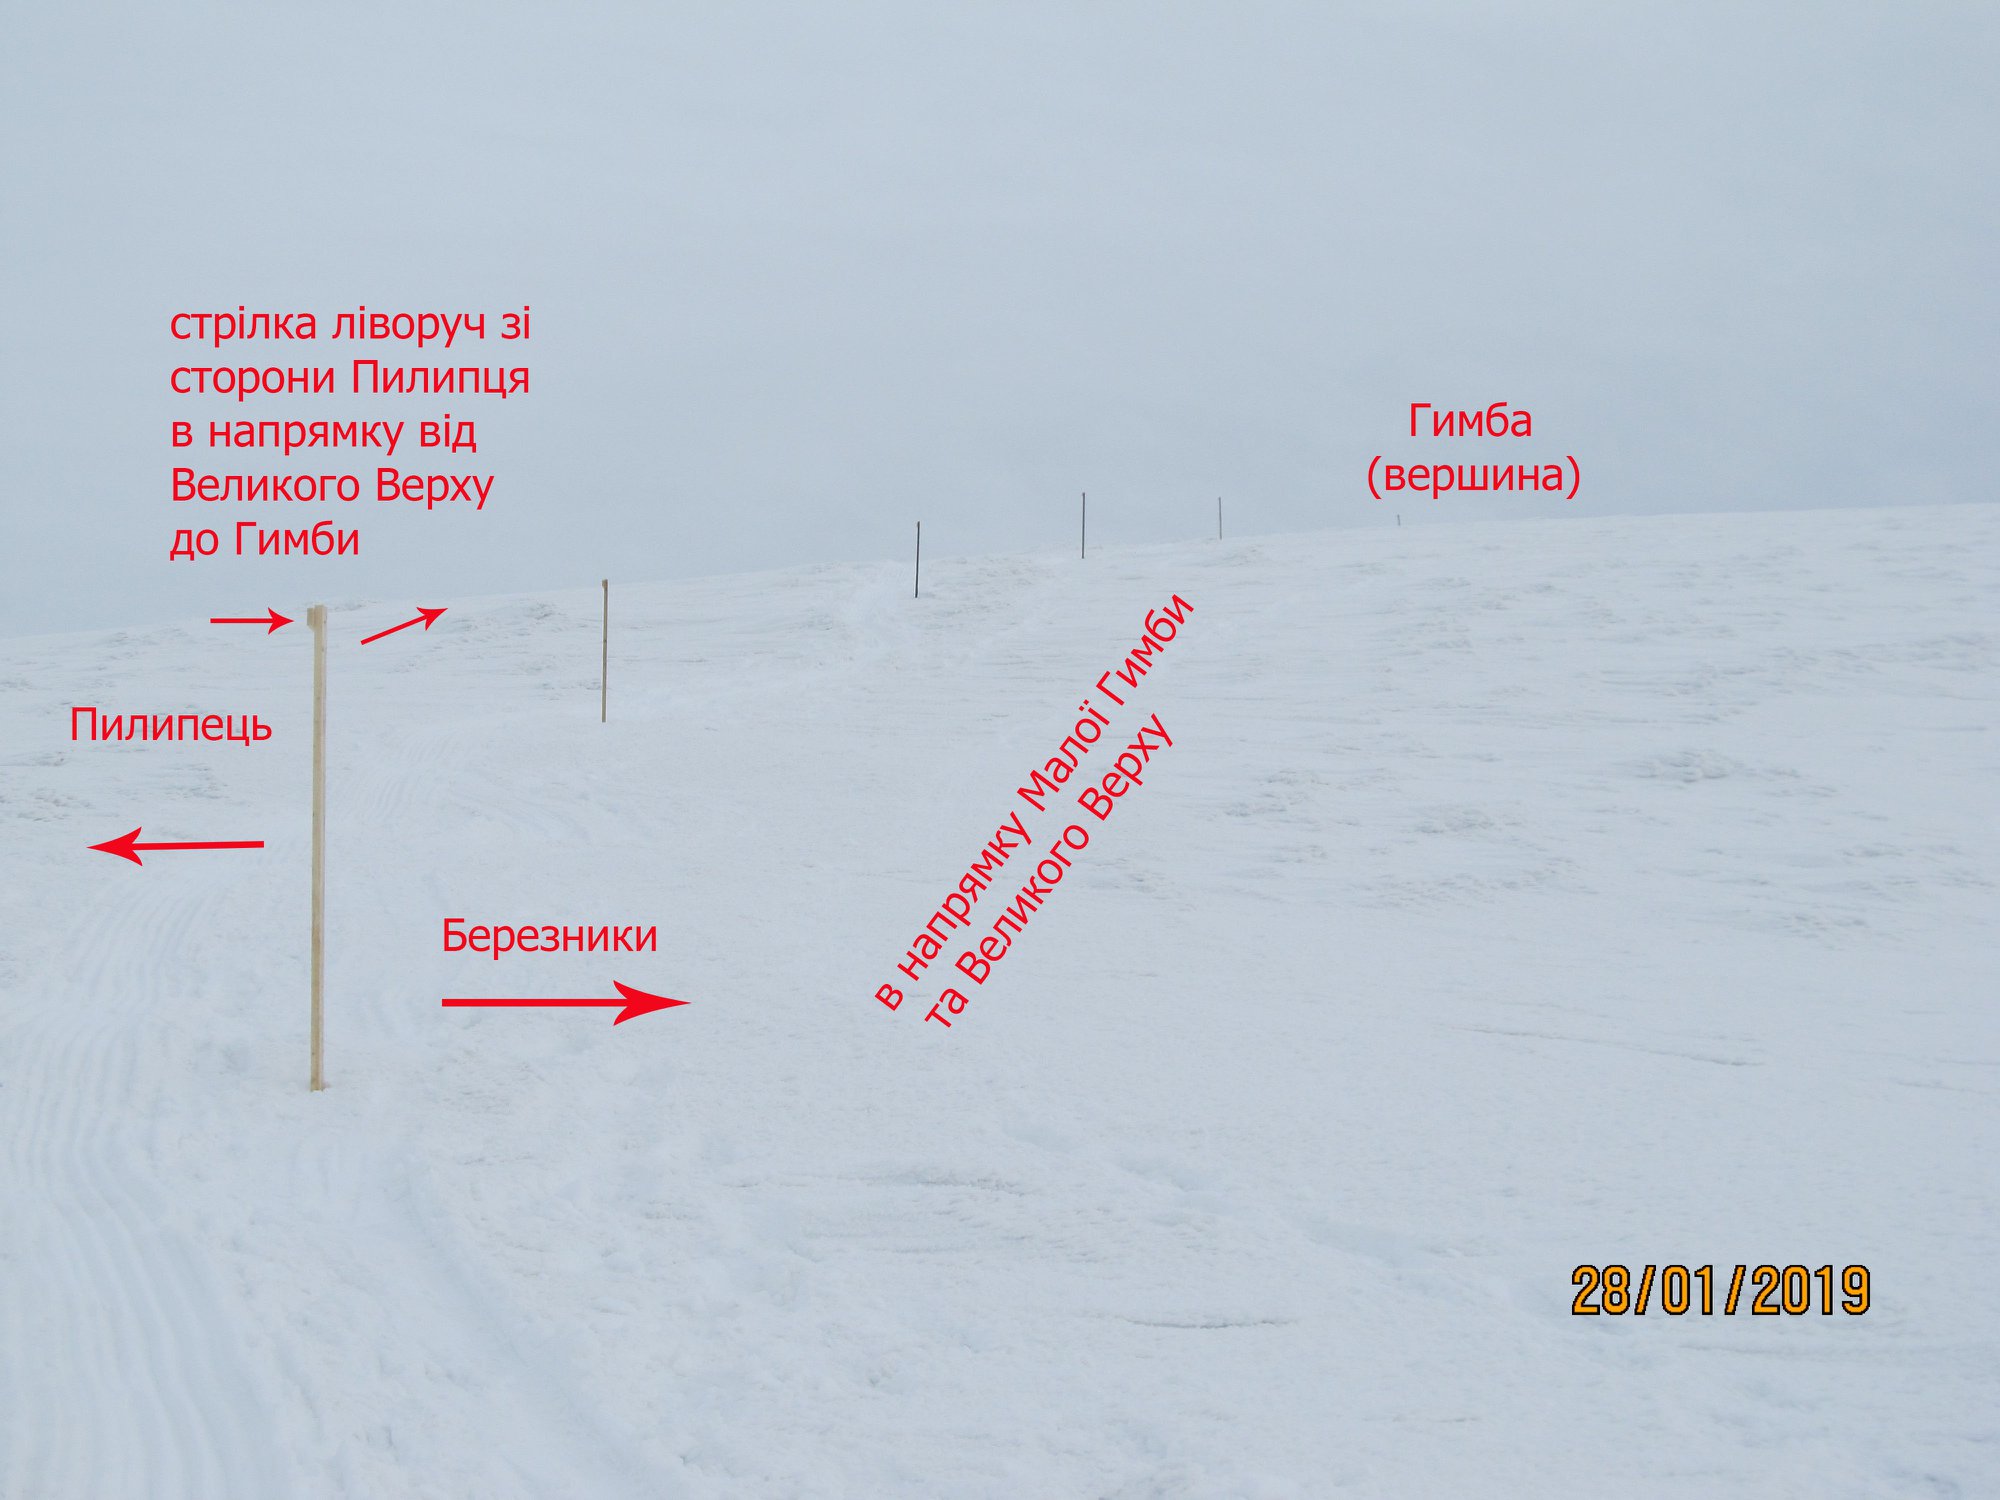 информационные указатели для туристов и лыжников на горе Гемба (Боржавский хребет) в Карпатах. Фото Василий Гутиряк